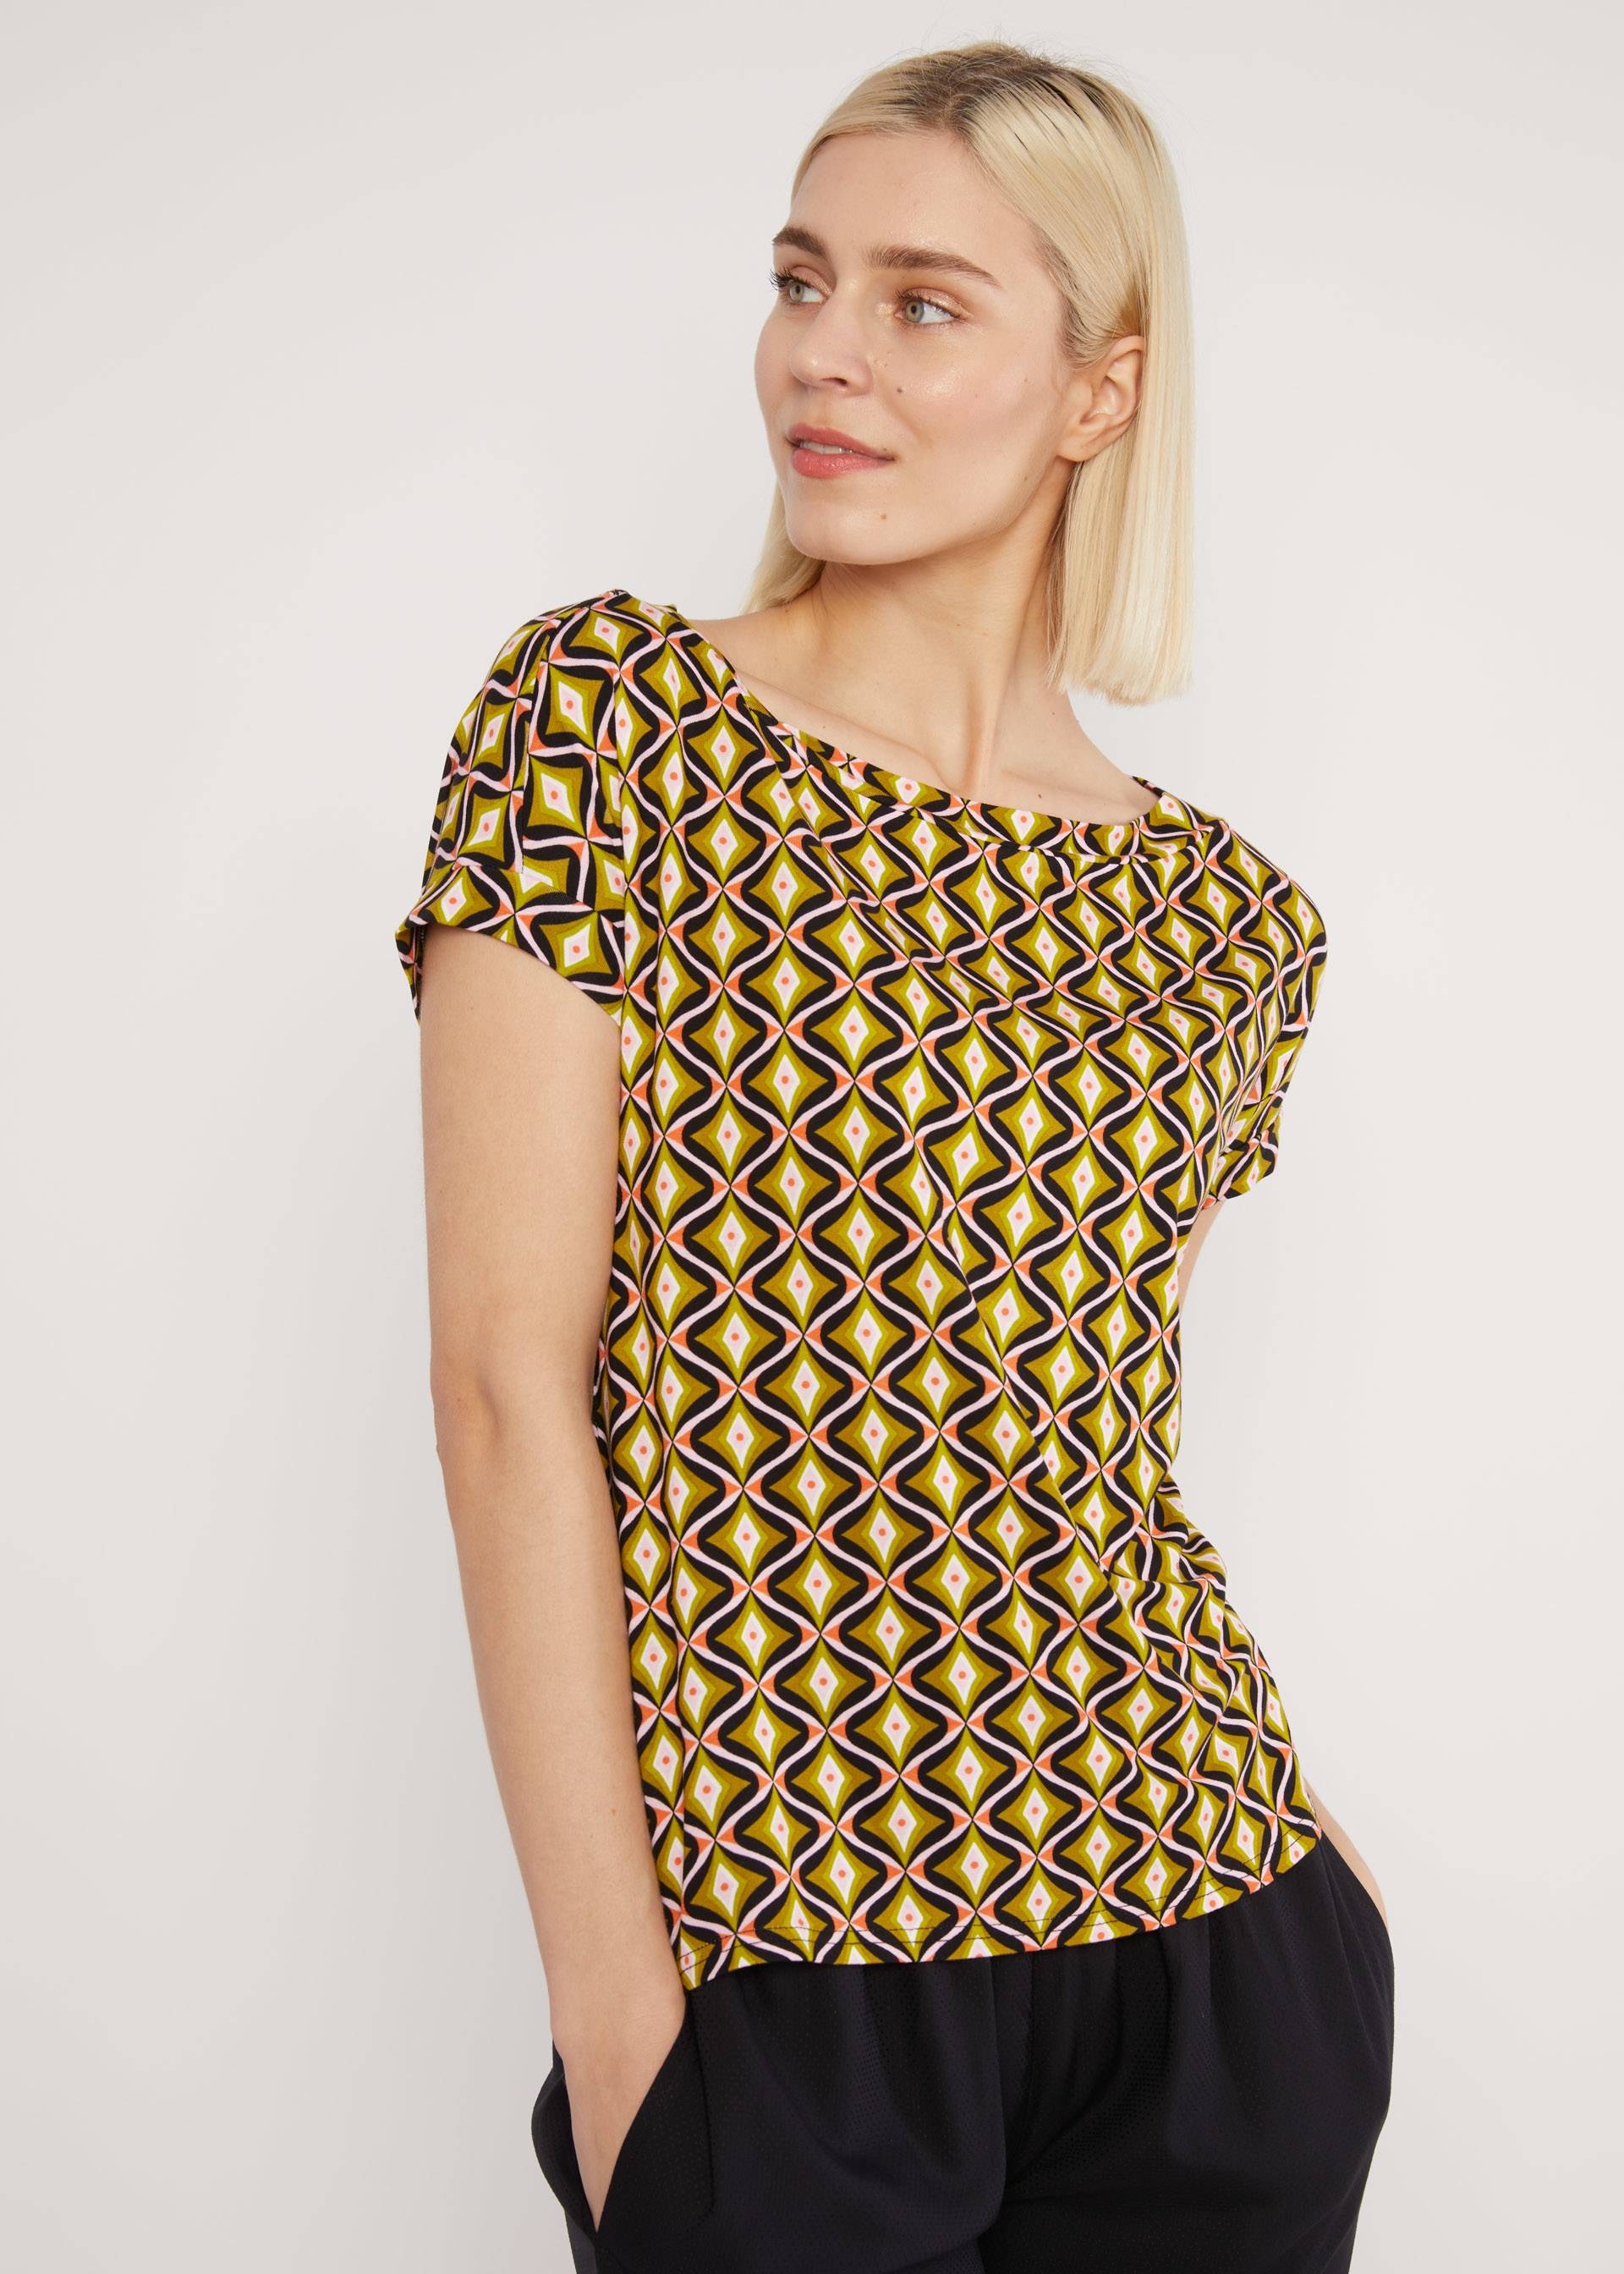 T-Shirt Flowgirl, pineapple shell, Tops, Black